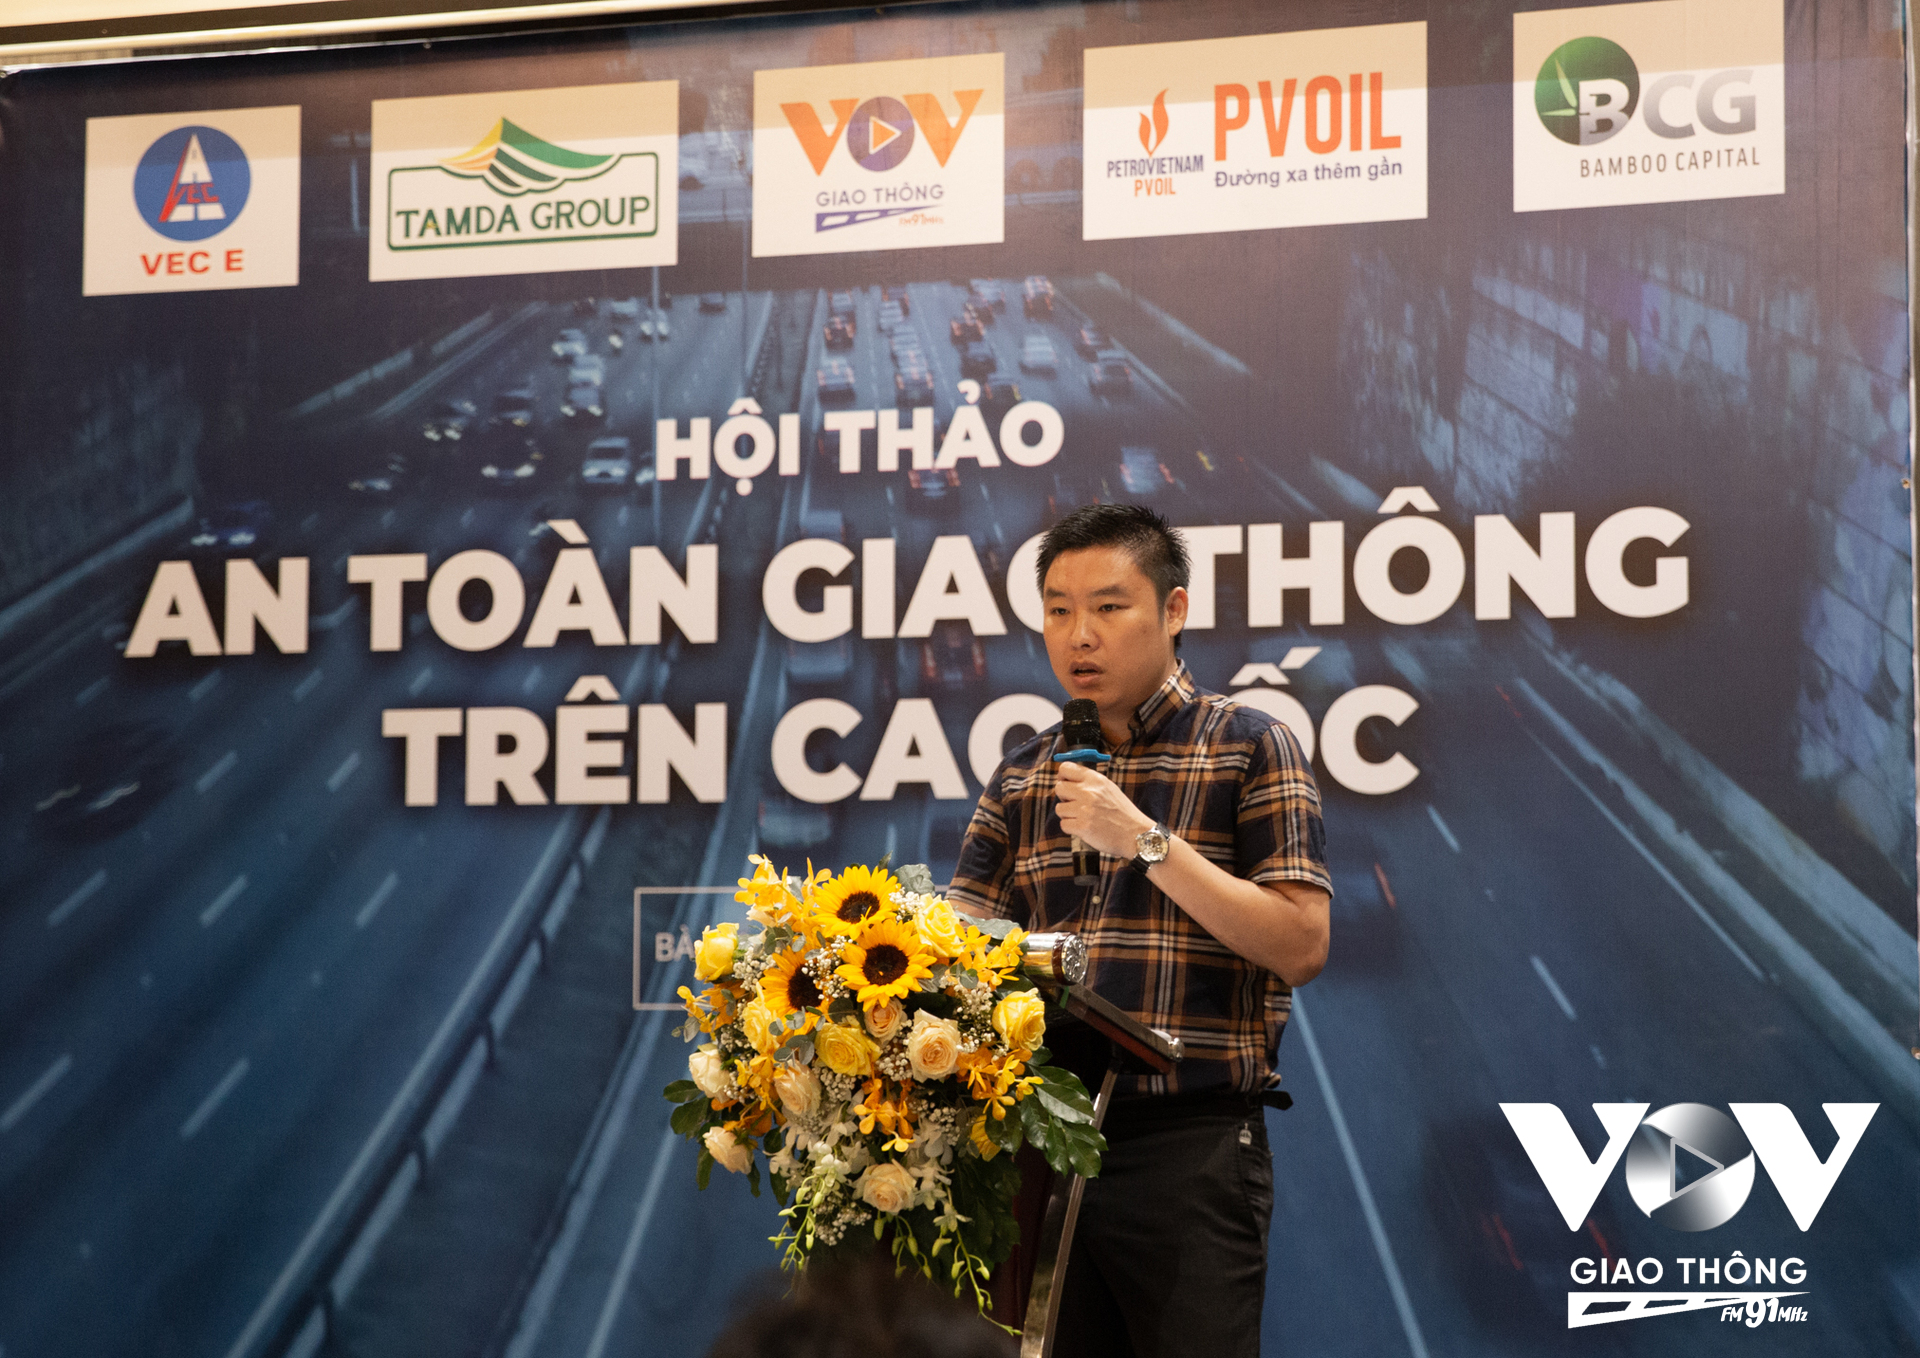 Nhà báo Phạm Linh - Phó trưởng phòng Thư ký, Kênh VOV Giao thông